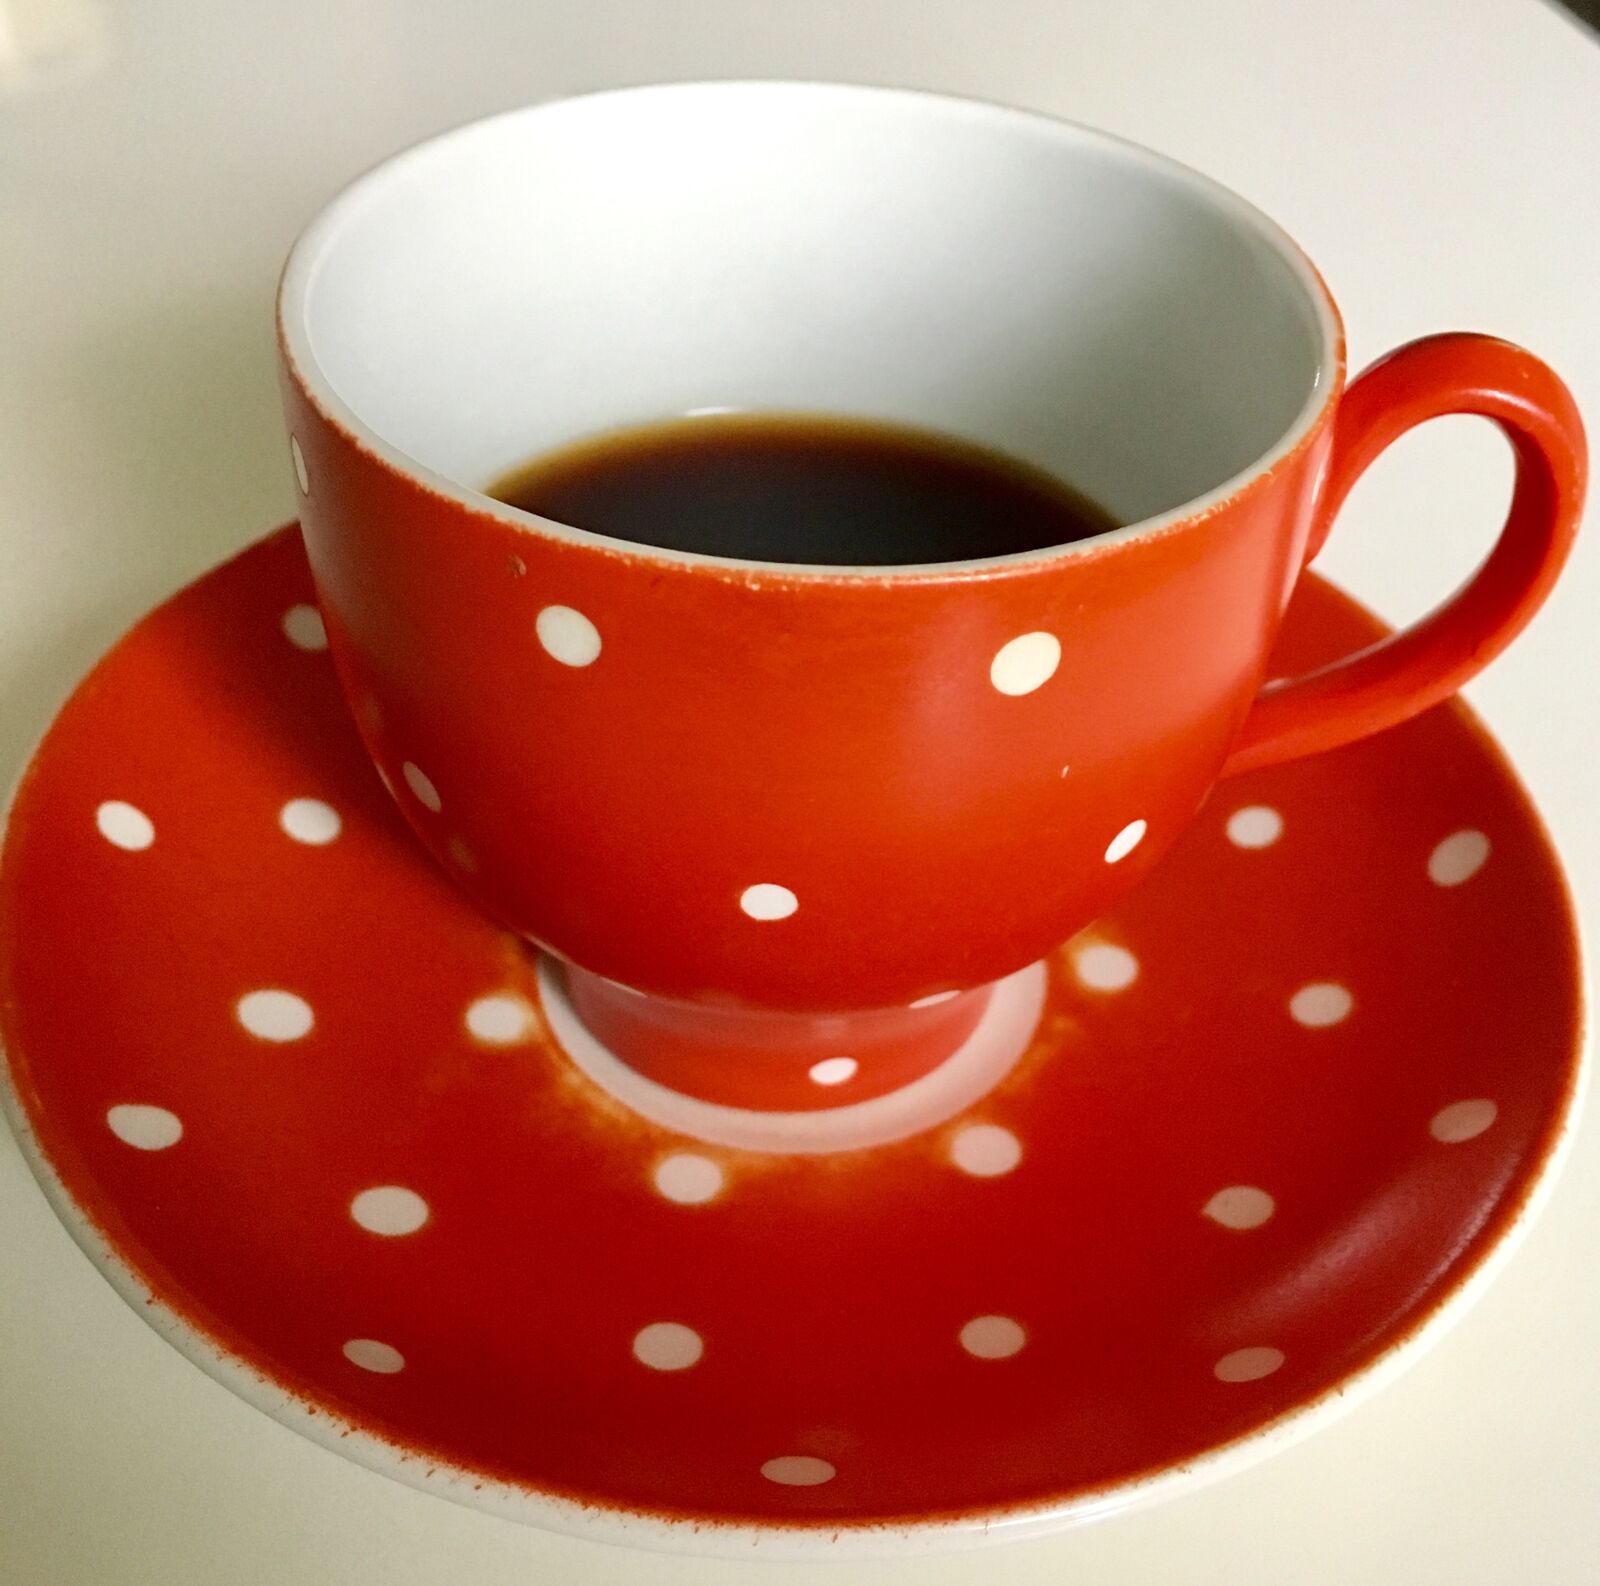 Apple iPhone 6s sample photo. Coffee mug, coffee, drink photography